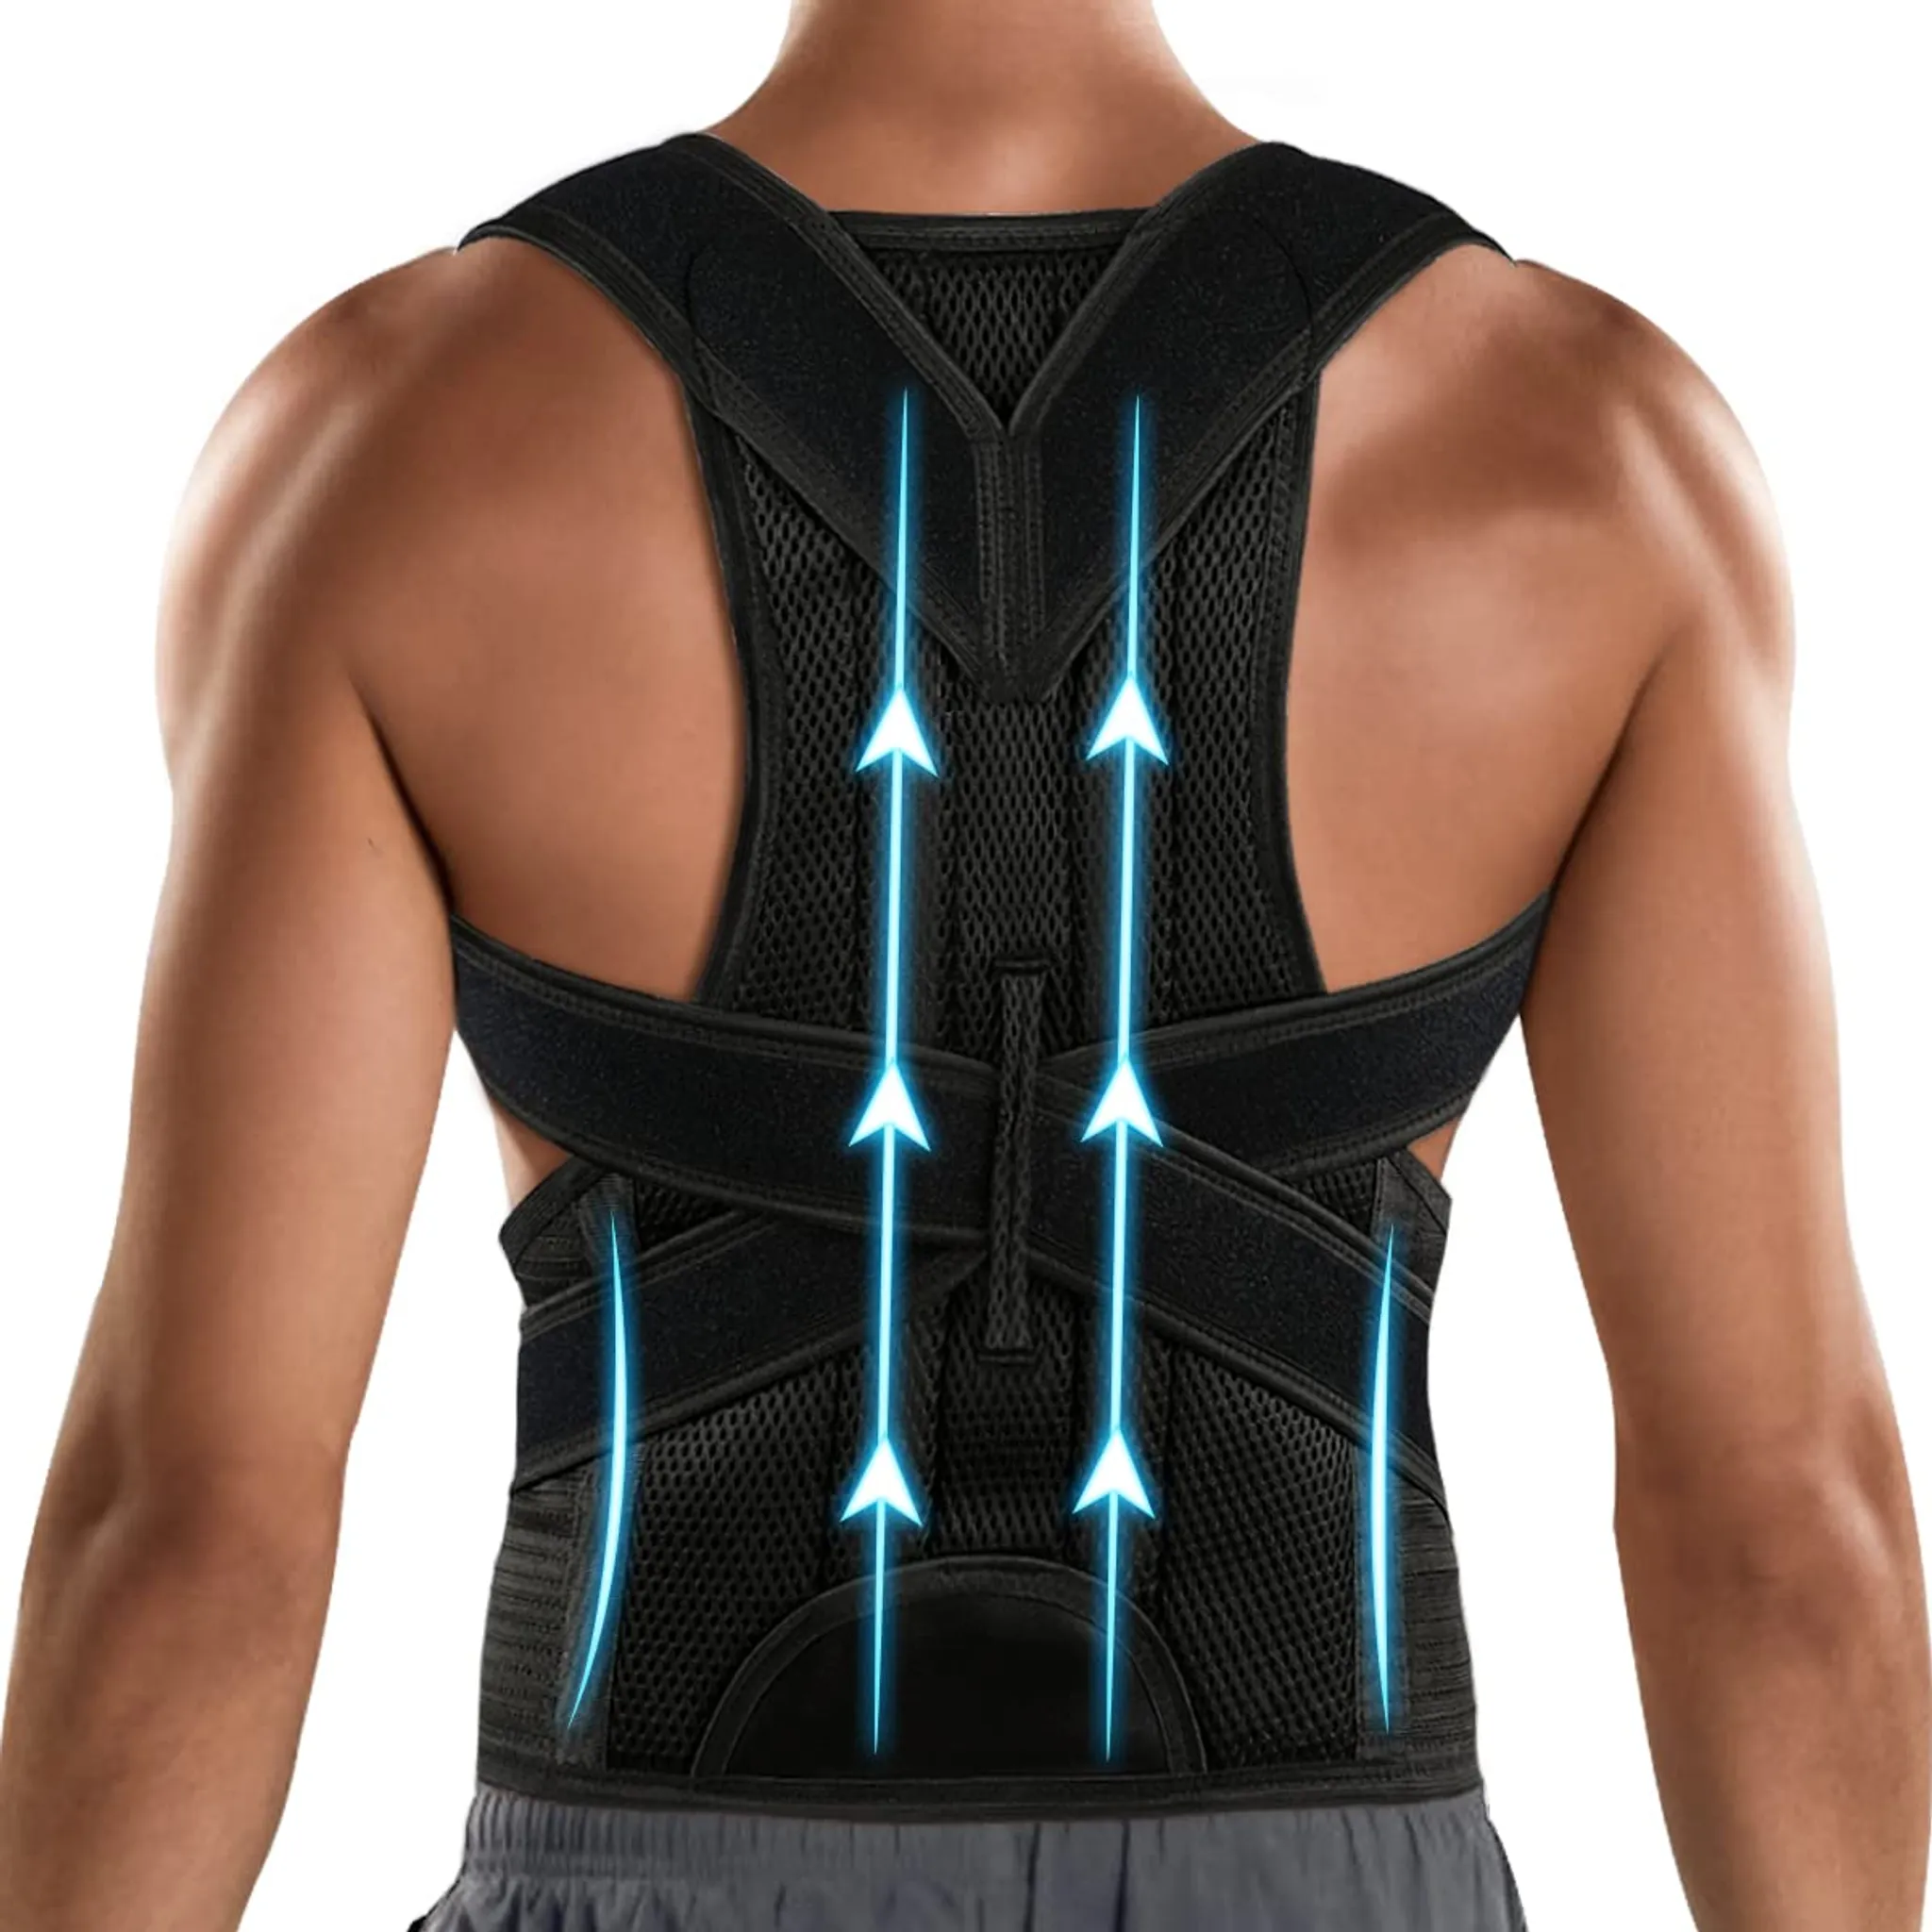 Haltungskorrektor Wirbelsäule und Rückenstütze für Nacken Rücken